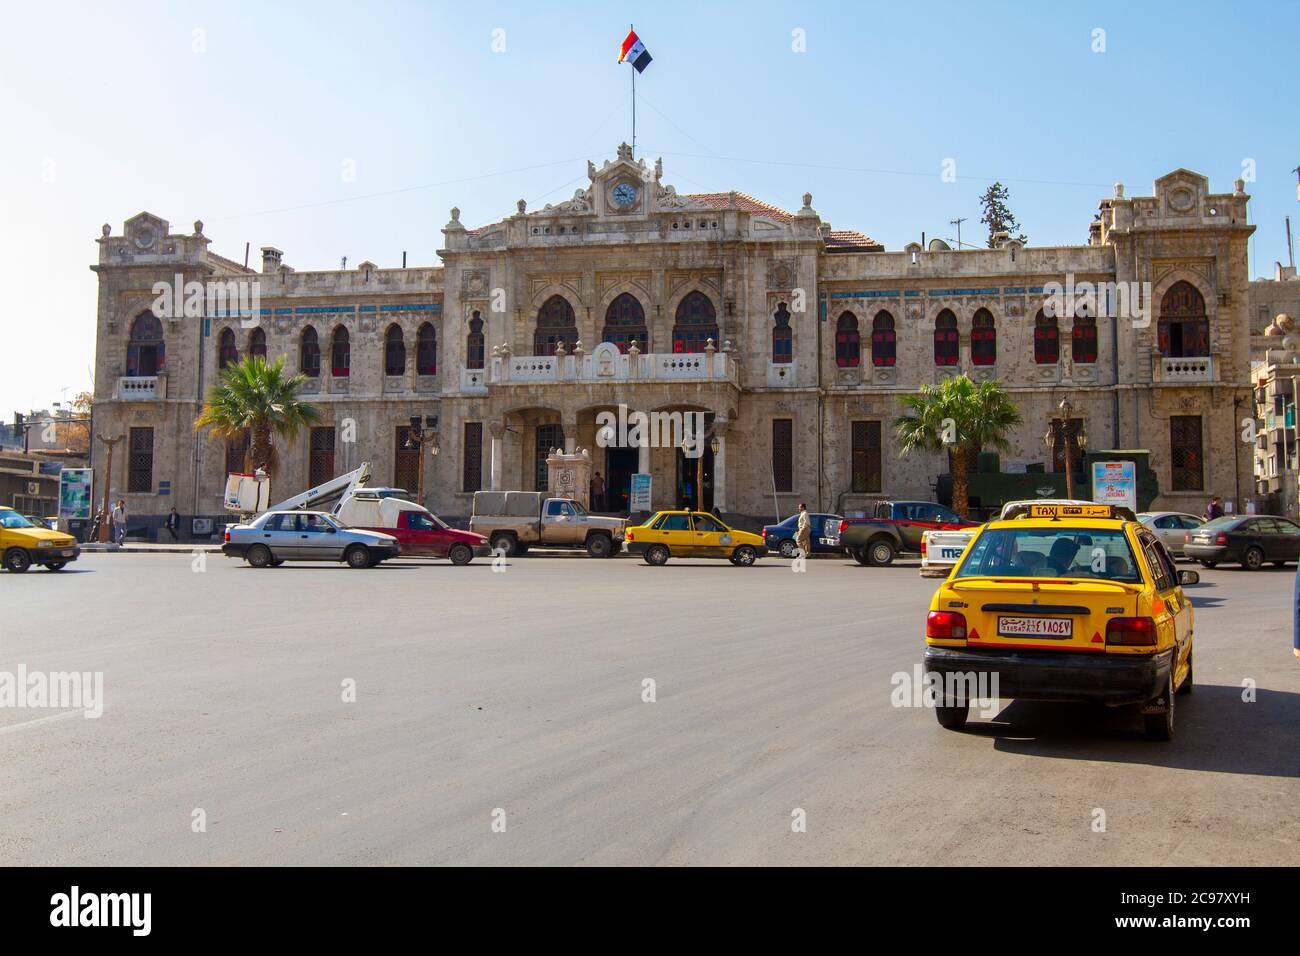 Damas/Syrie 03/30/2010 : Gare de Hejaz, un bâtiment historique datant de l'époque ottomane, célèbre pour ses fenêtres en verre coloré et sa tradition Banque D'Images